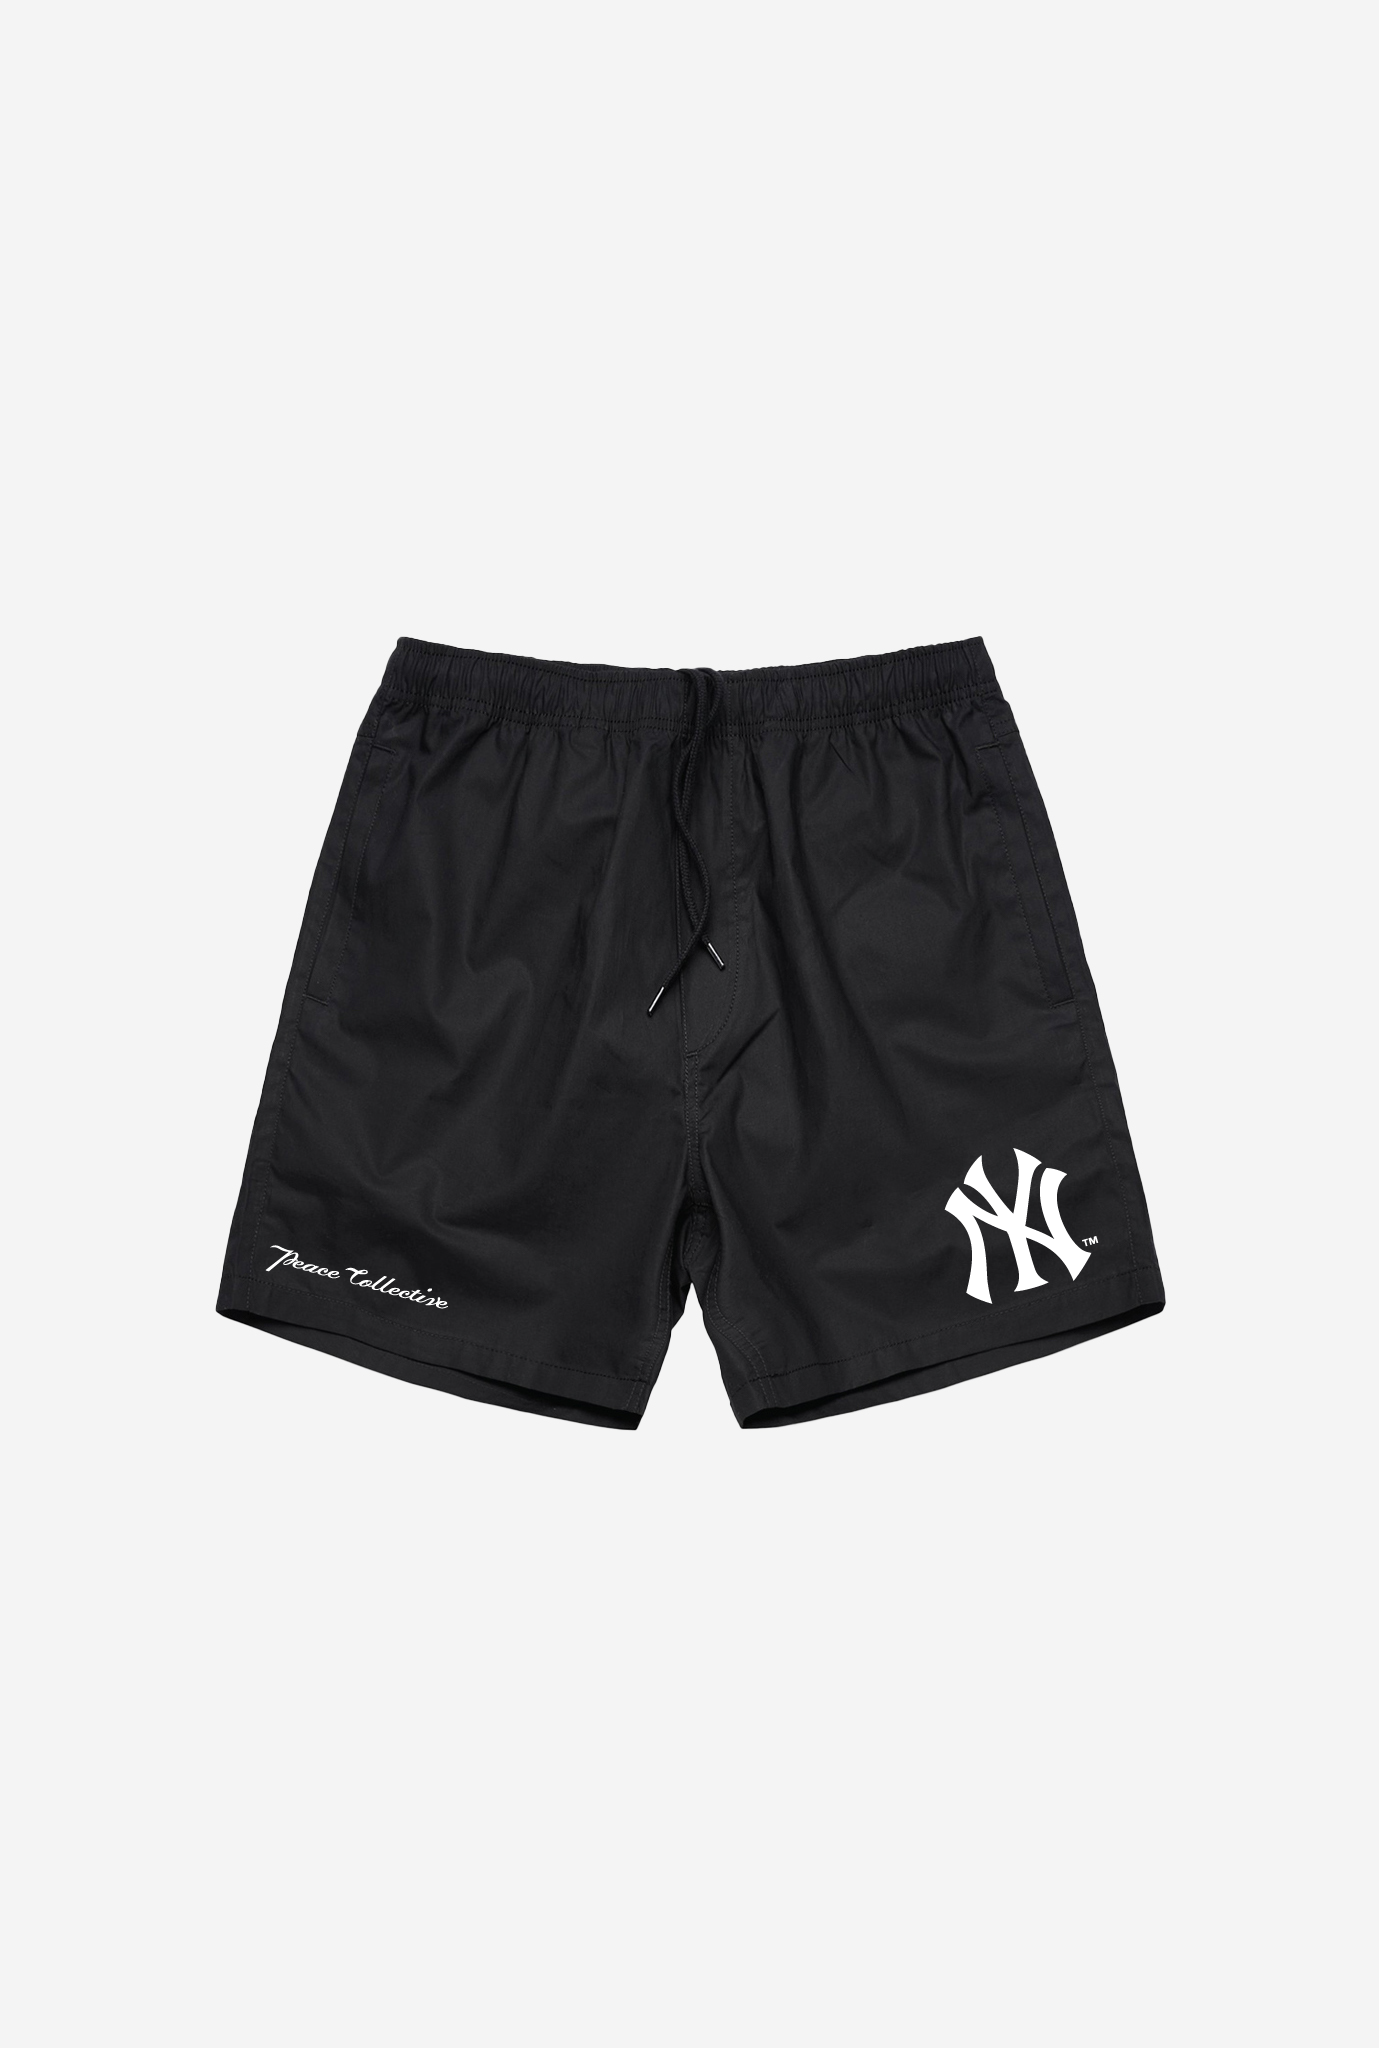 New York Yankees Shorts - Black